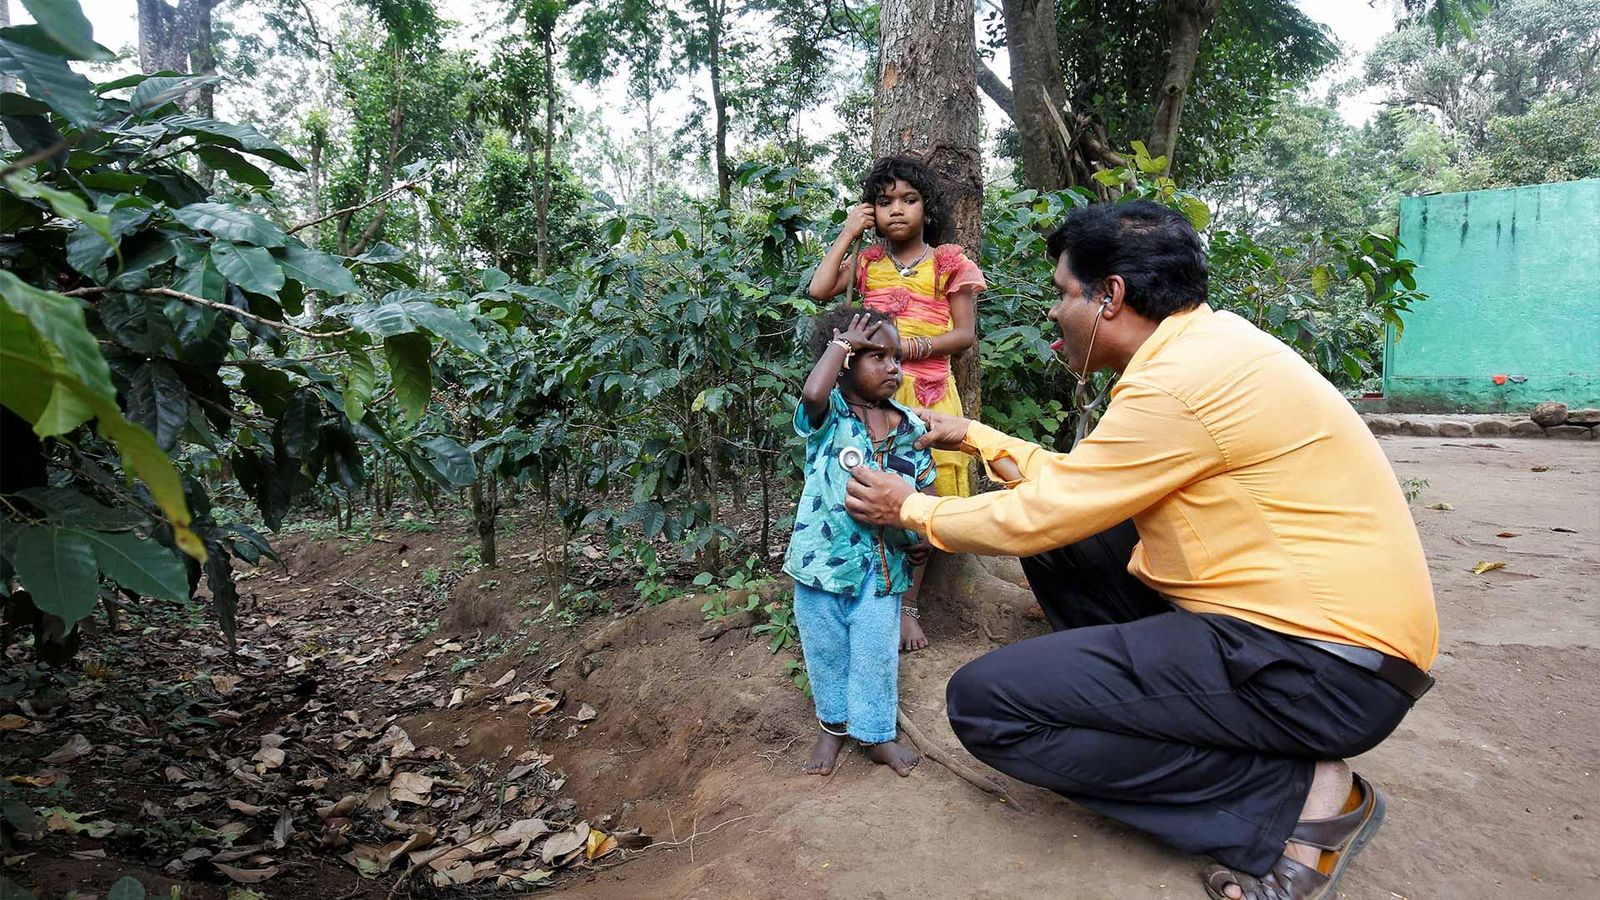 Le Dr Lingaraju vérifie l'état de santé de Manikantan sous le regard attentif de sa sœur Geetha à l'intérieur de la réserve de tigres du temple de Billigiri Ranganathaswamy dans le district de Chamrajanagara, dans l'État du Karnataka, en Inde.